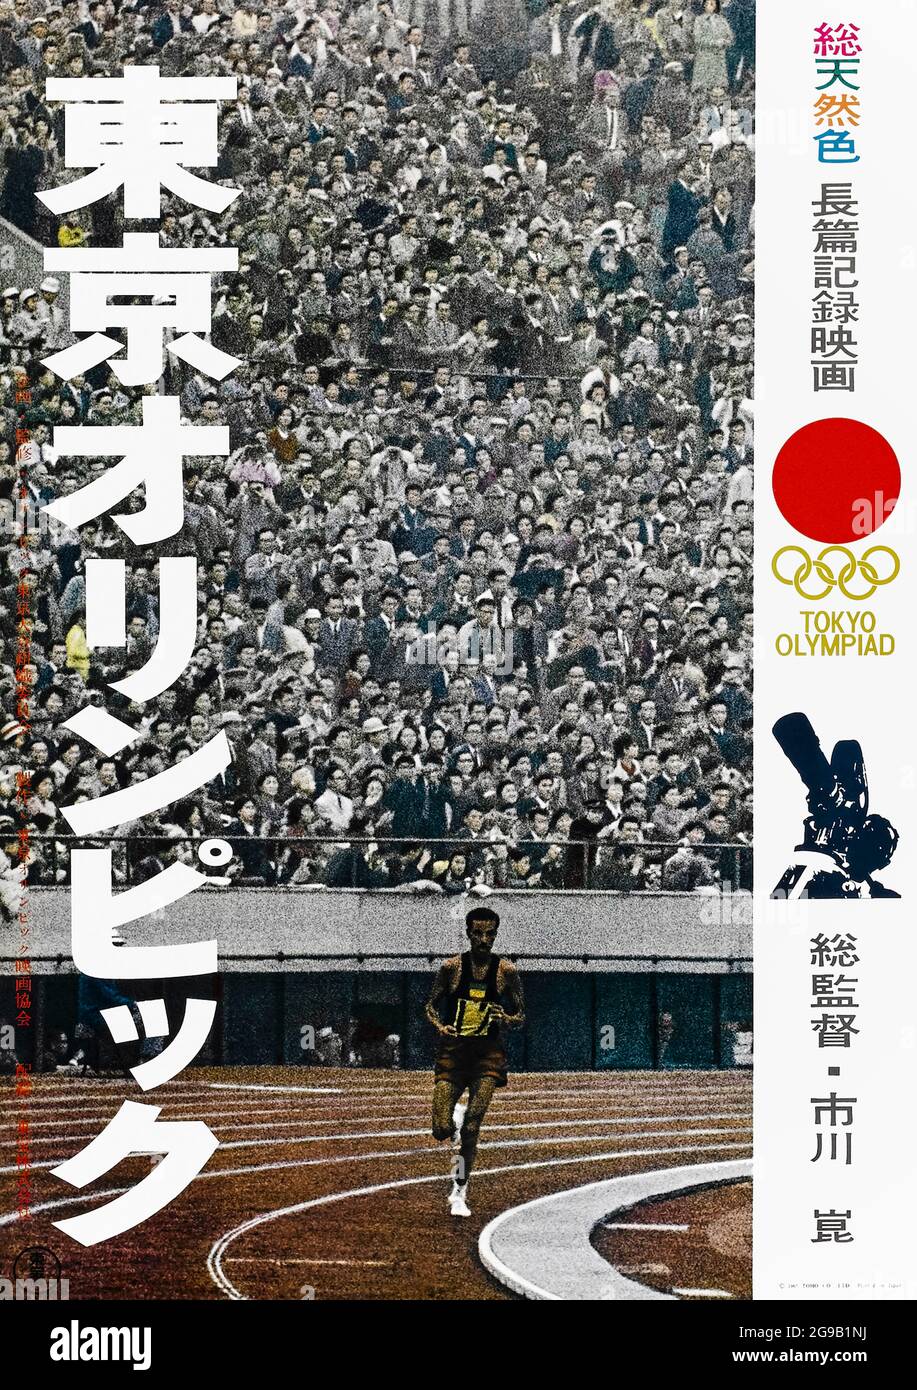 Tokyo Olympiad (1965) réalisé par Kon Ichikawa et mettant en vedette Abebe Bikila, Jack Douglas, Ahmed Issa et l'empereur Hirohito. Documentaire japonais sur les Jeux olympiques d'été de 1964 qui se tiennent à Tokyo et qui met l'accent sur l'atmosphère de l'événement et de ses participants. Banque D'Images